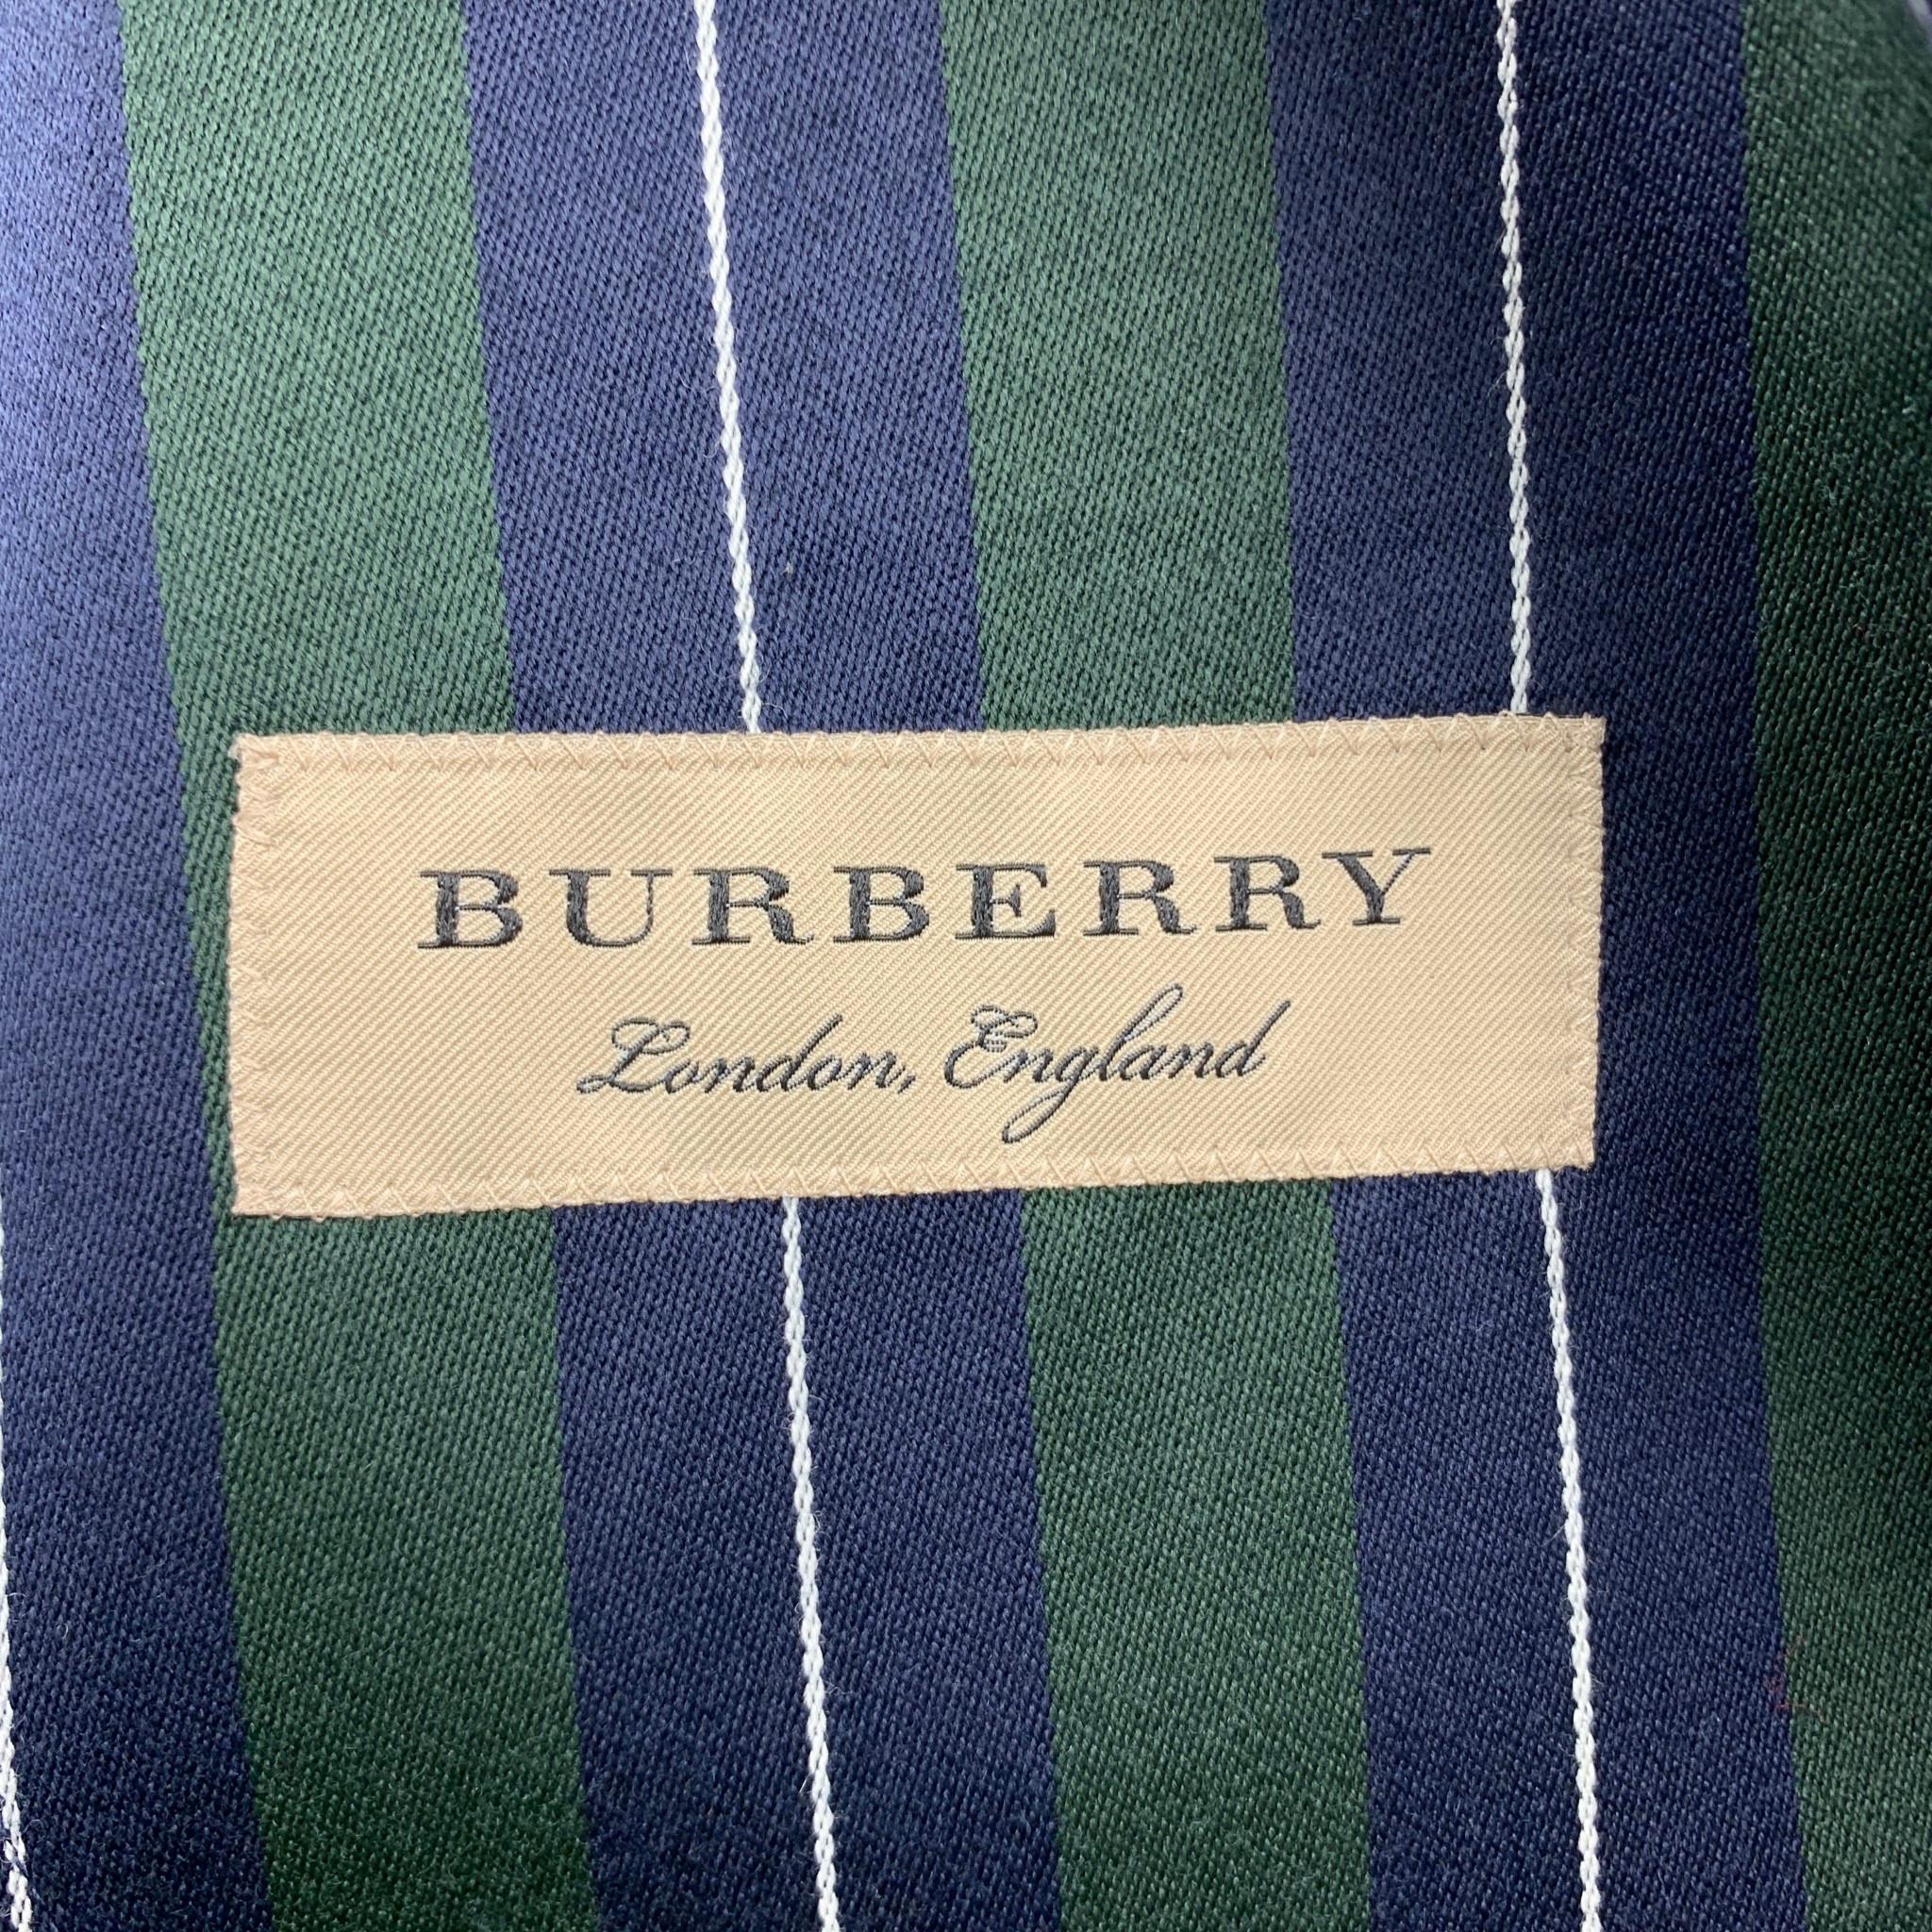 BURBERRY Size 36 Regular Green & Navy Vertical Stripe Wool / Cotton Notch Lapel  4